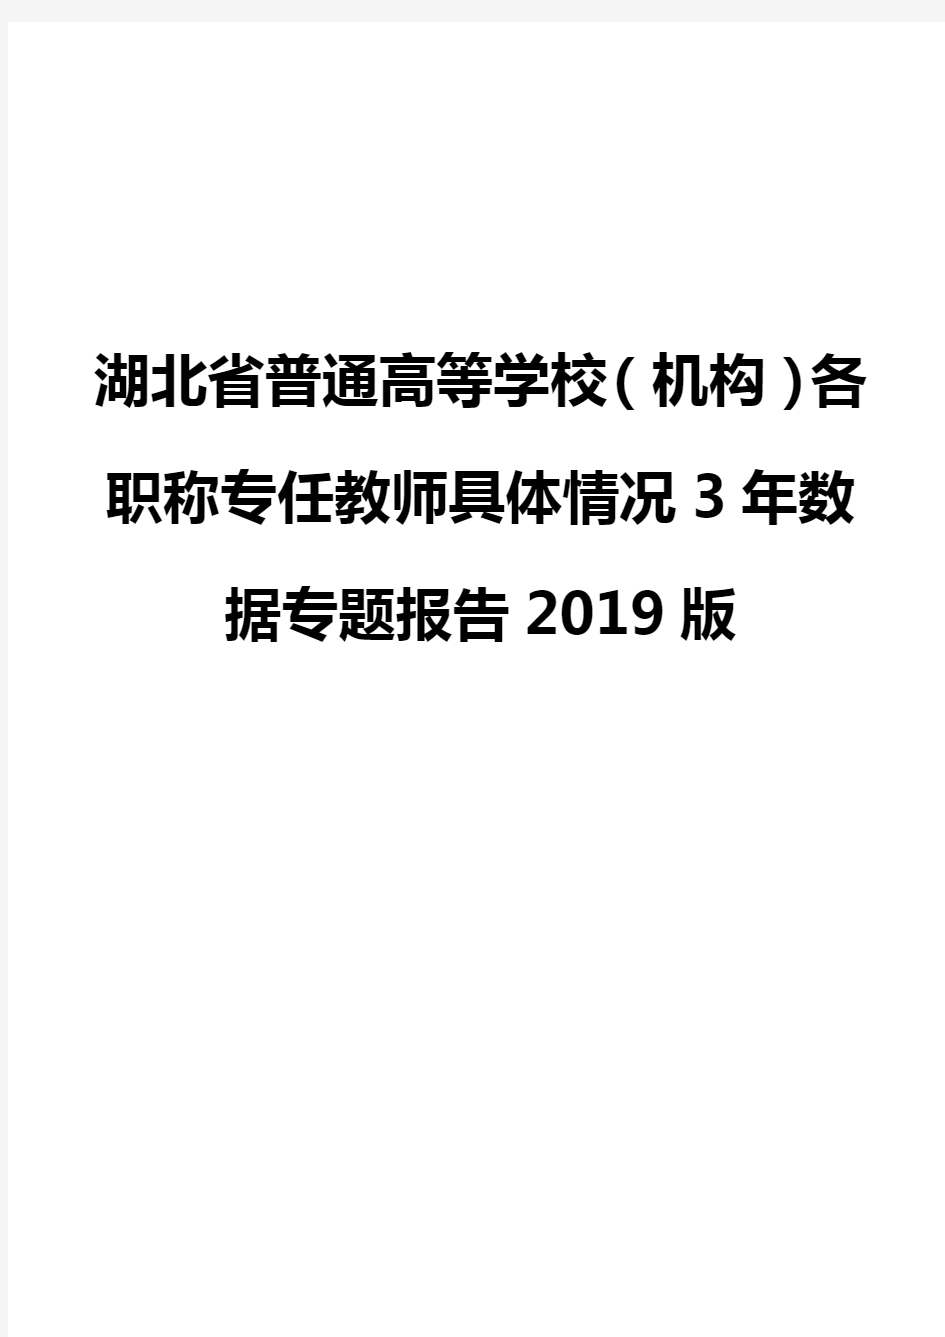 湖北省普通高等学校(机构)各职称专任教师具体情况3年数据专题报告2019版